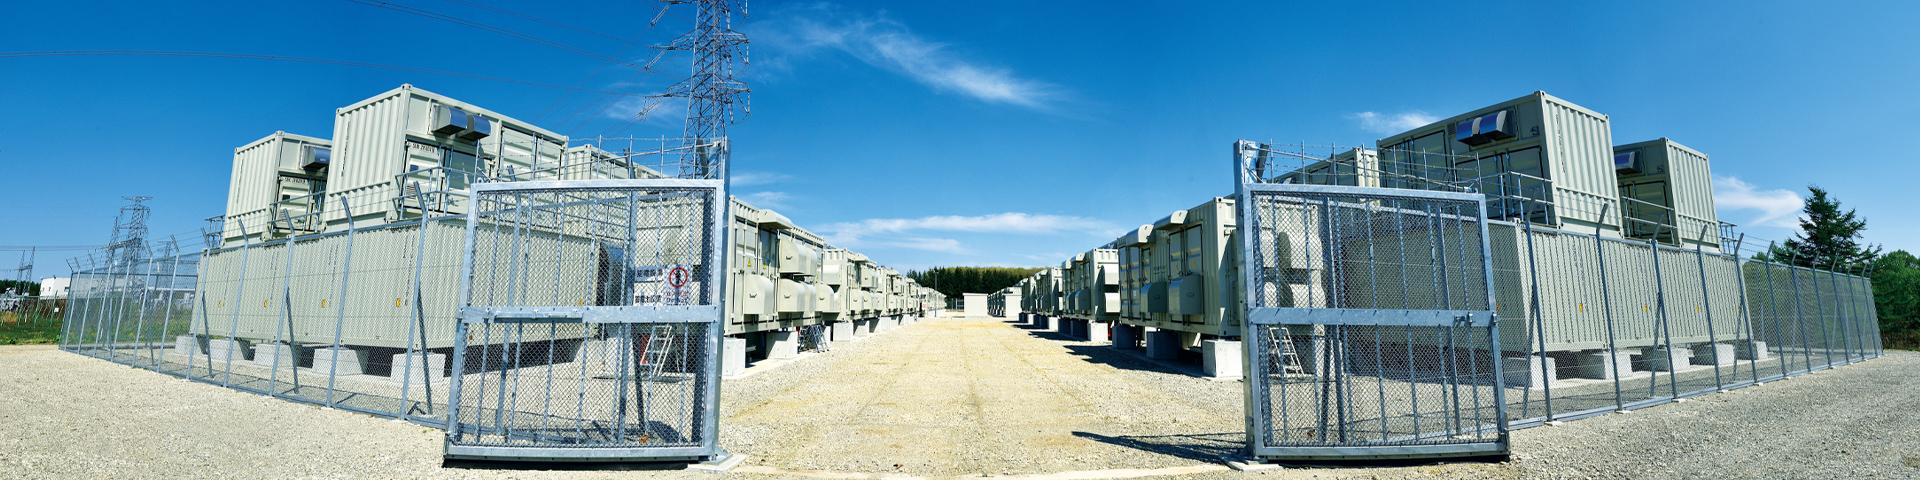 Minami-Hayakita Substation HEPCO Network